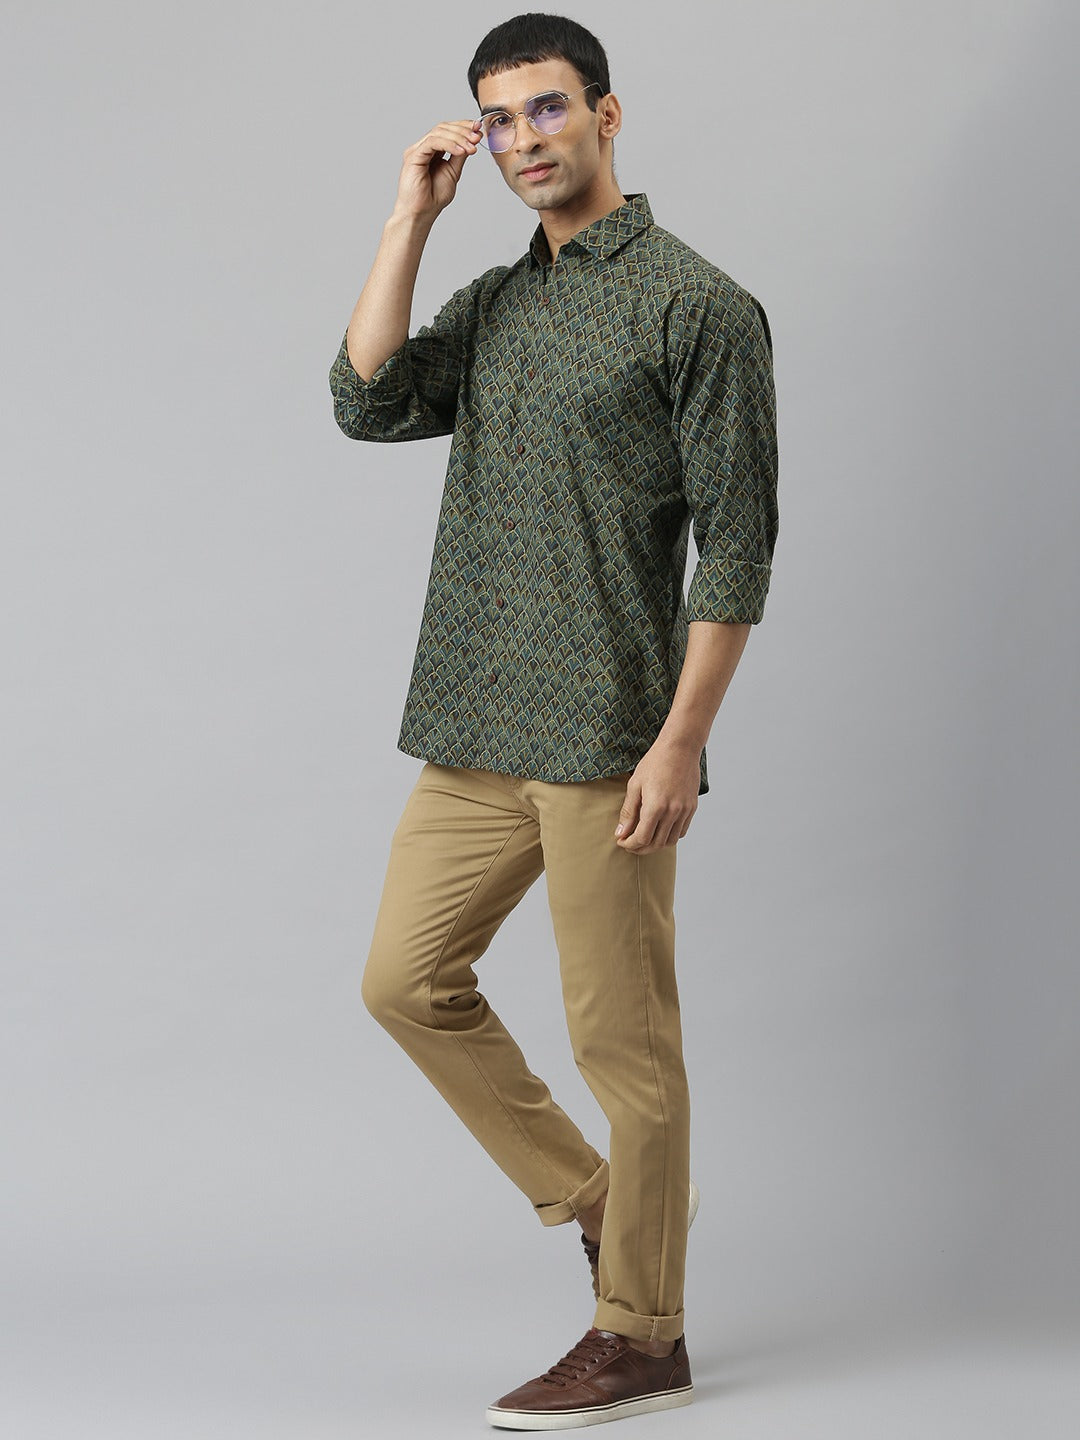 Millennial Men Green Comfort Printed Casual Shirt